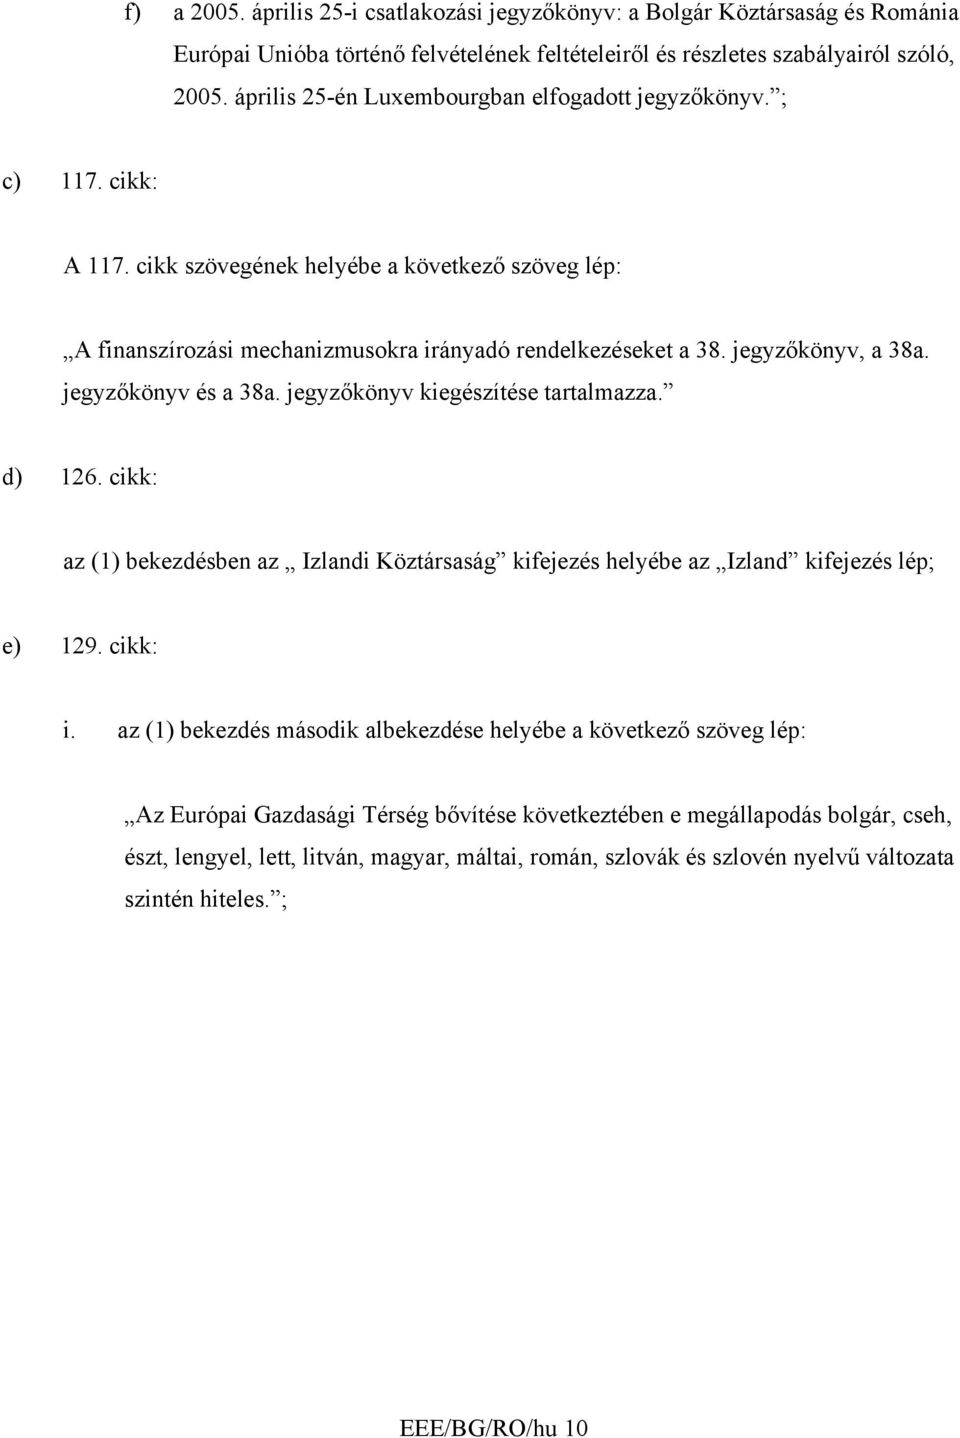 jegyzőkönyv, a 38a. jegyzőkönyv és a 38a. jegyzőkönyv kiegészítése tartalmazza. d) 126. cikk: az (1) bekezdésben az Izlandi Köztársaság kifejezés helyébe az Izland kifejezés lép; e) 129. cikk: i.